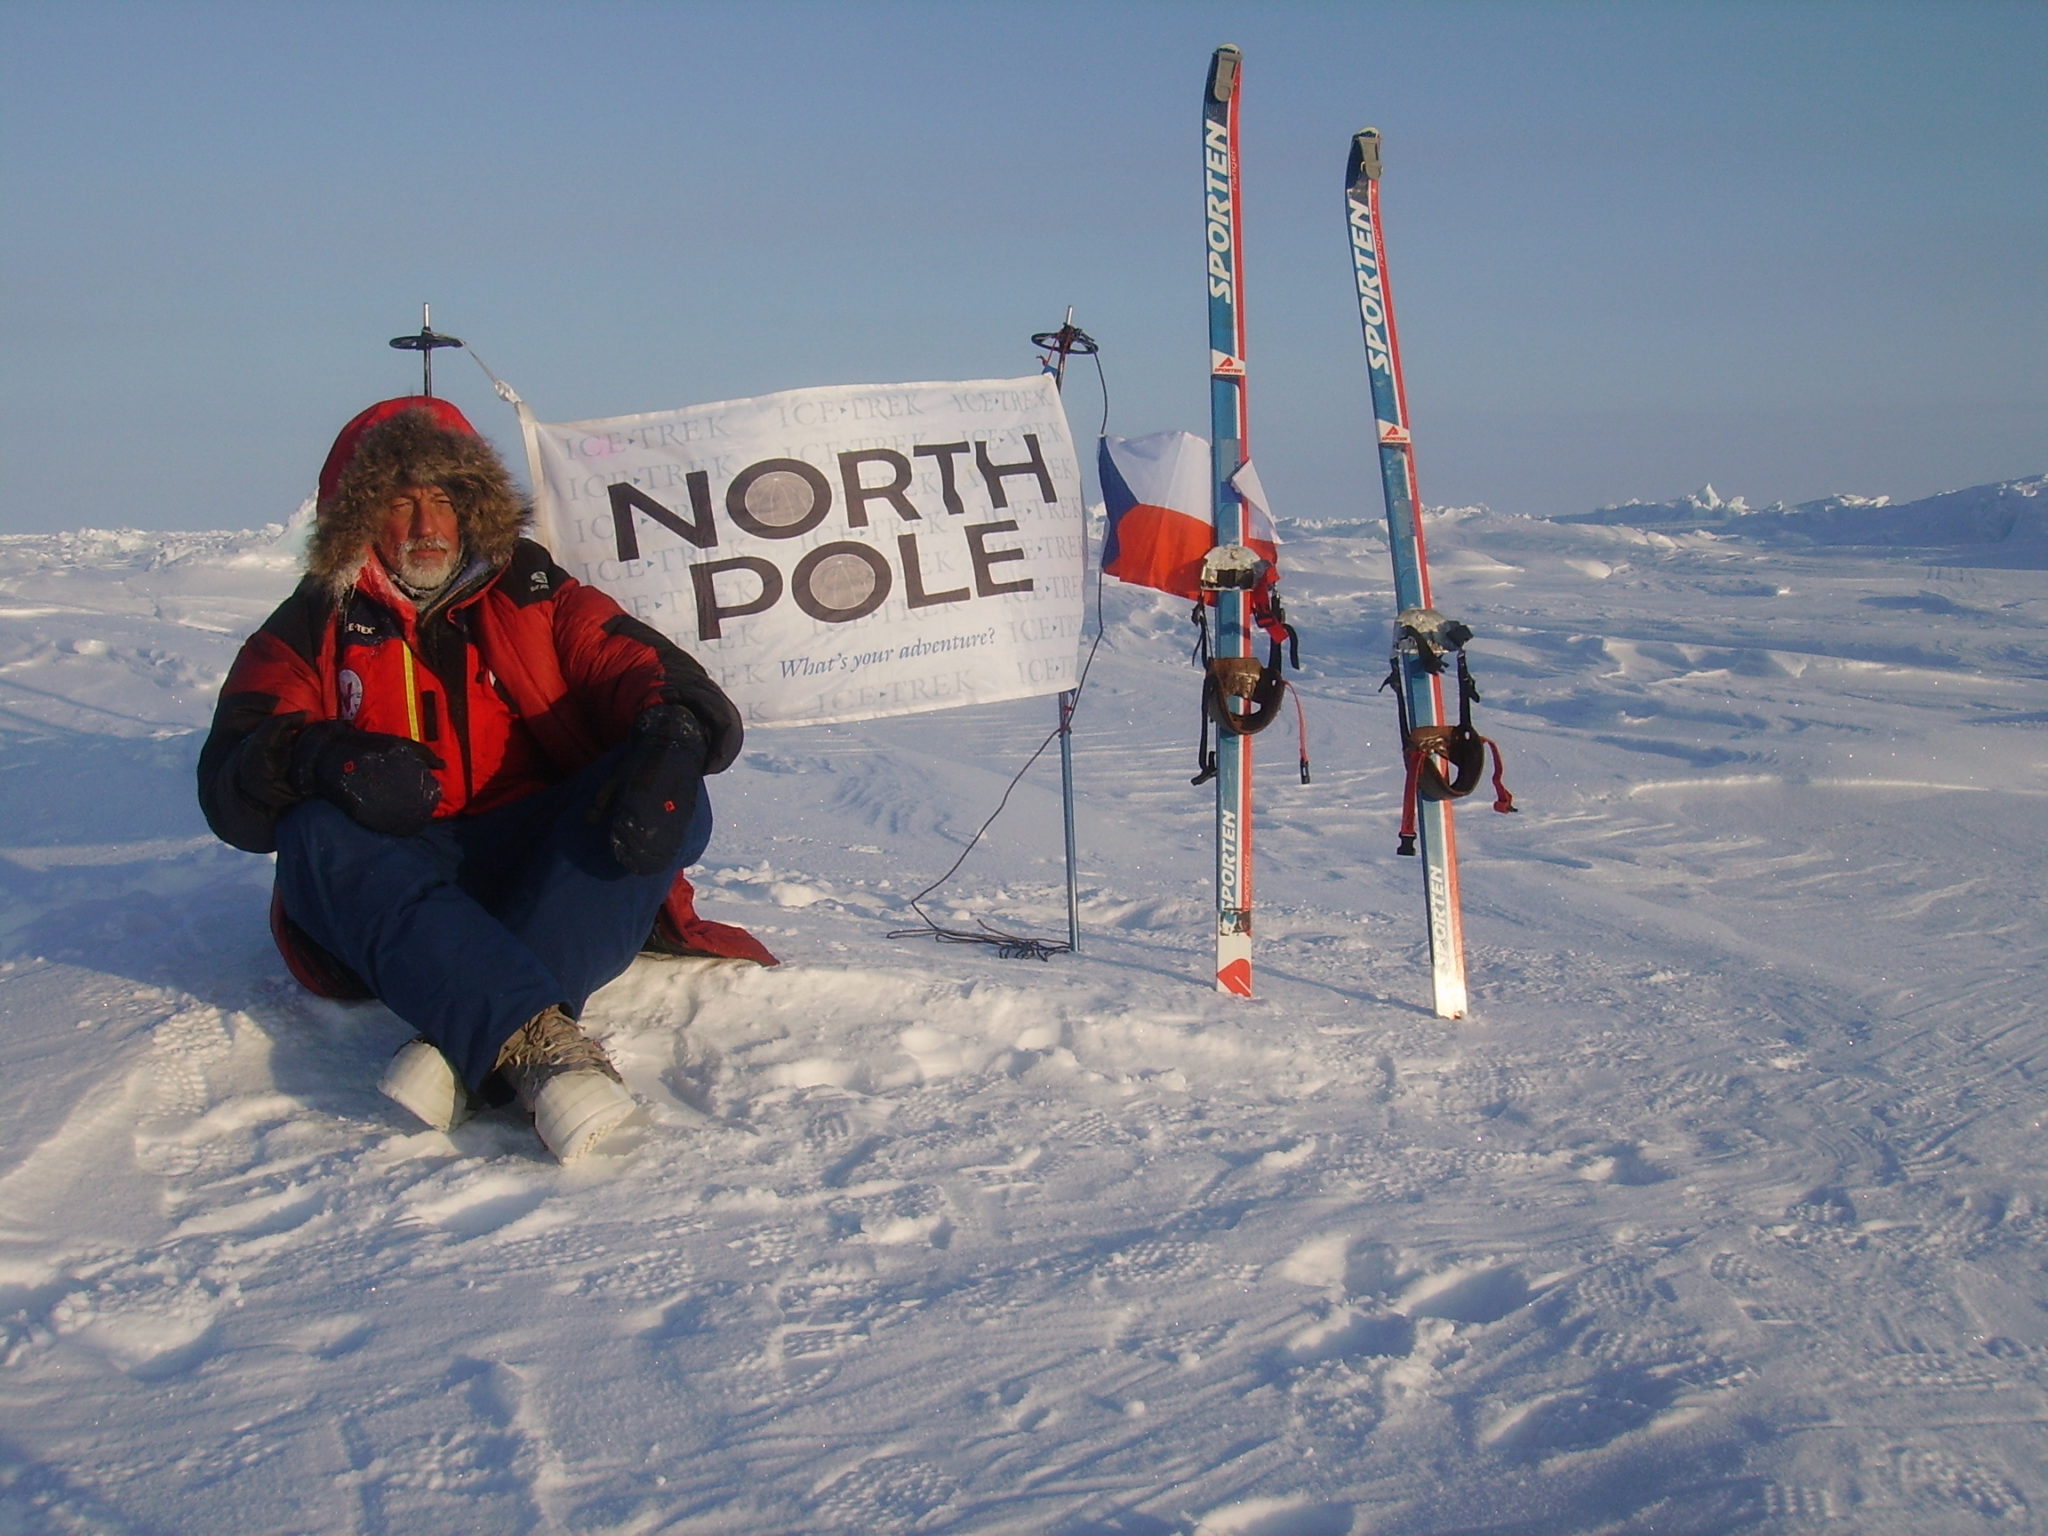 Polárník Miroslav Jakeš i po šedesátce dobývá severní pól